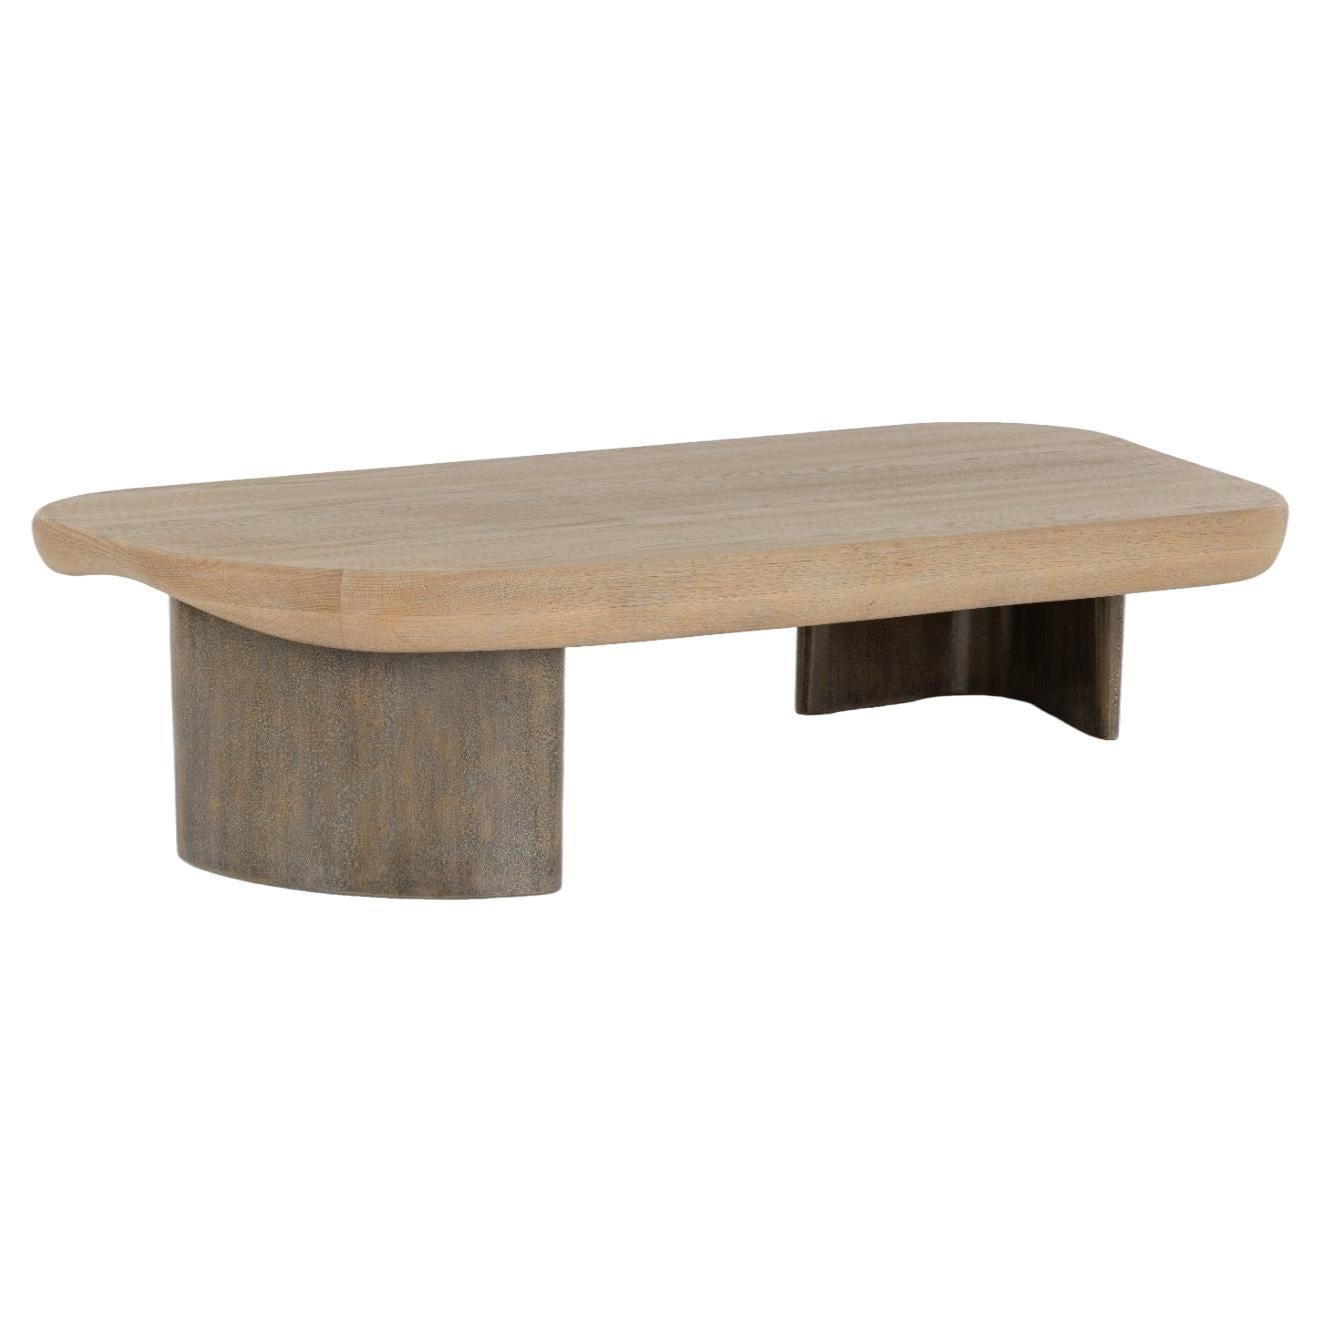  Table basse, plateau en chêne, base en bois laqué texturé faite à la main, océan